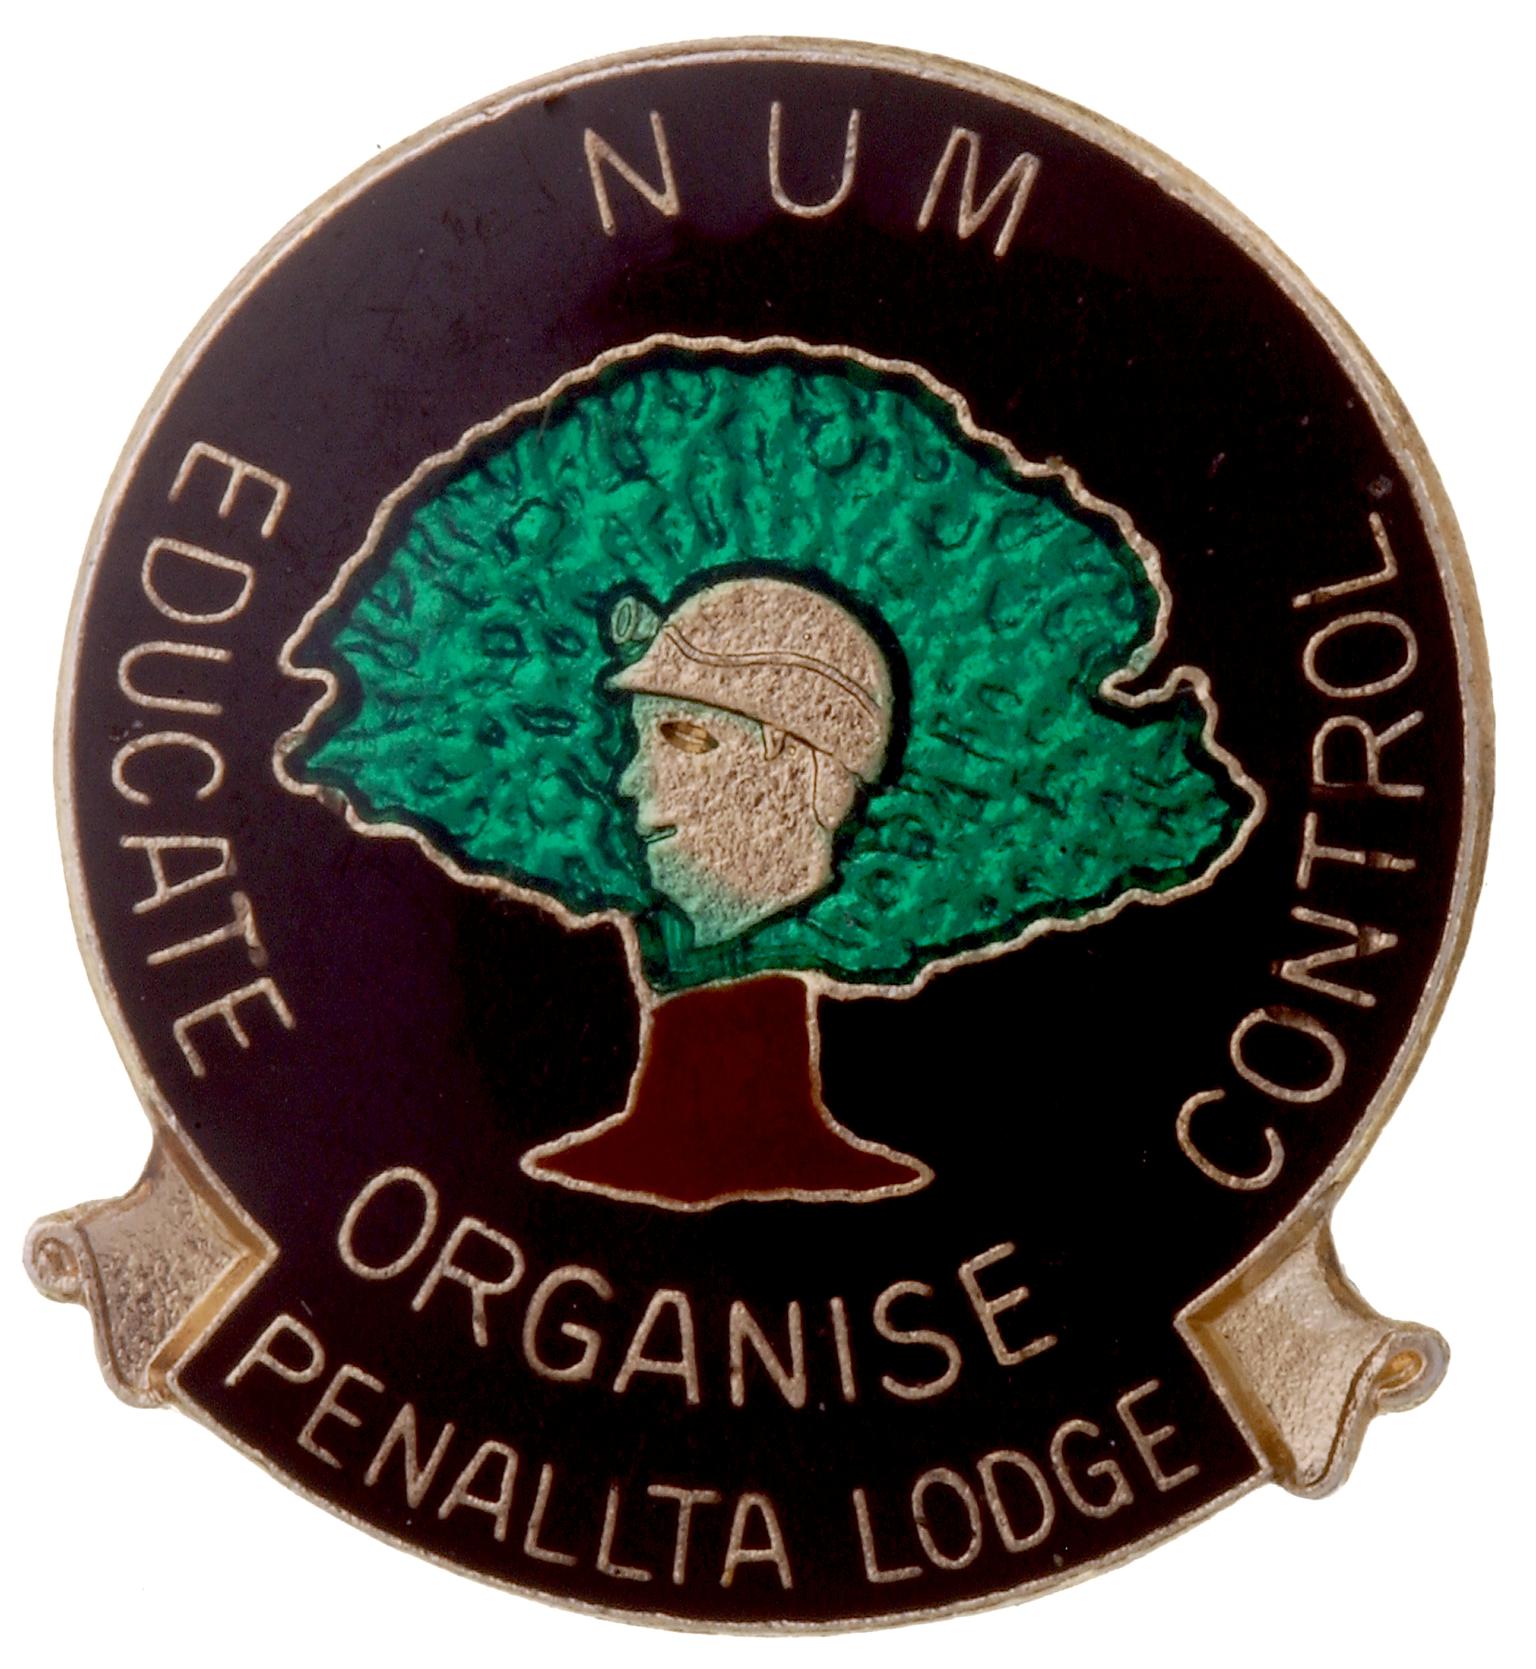 N.U.M. Penallta Lodge, badge